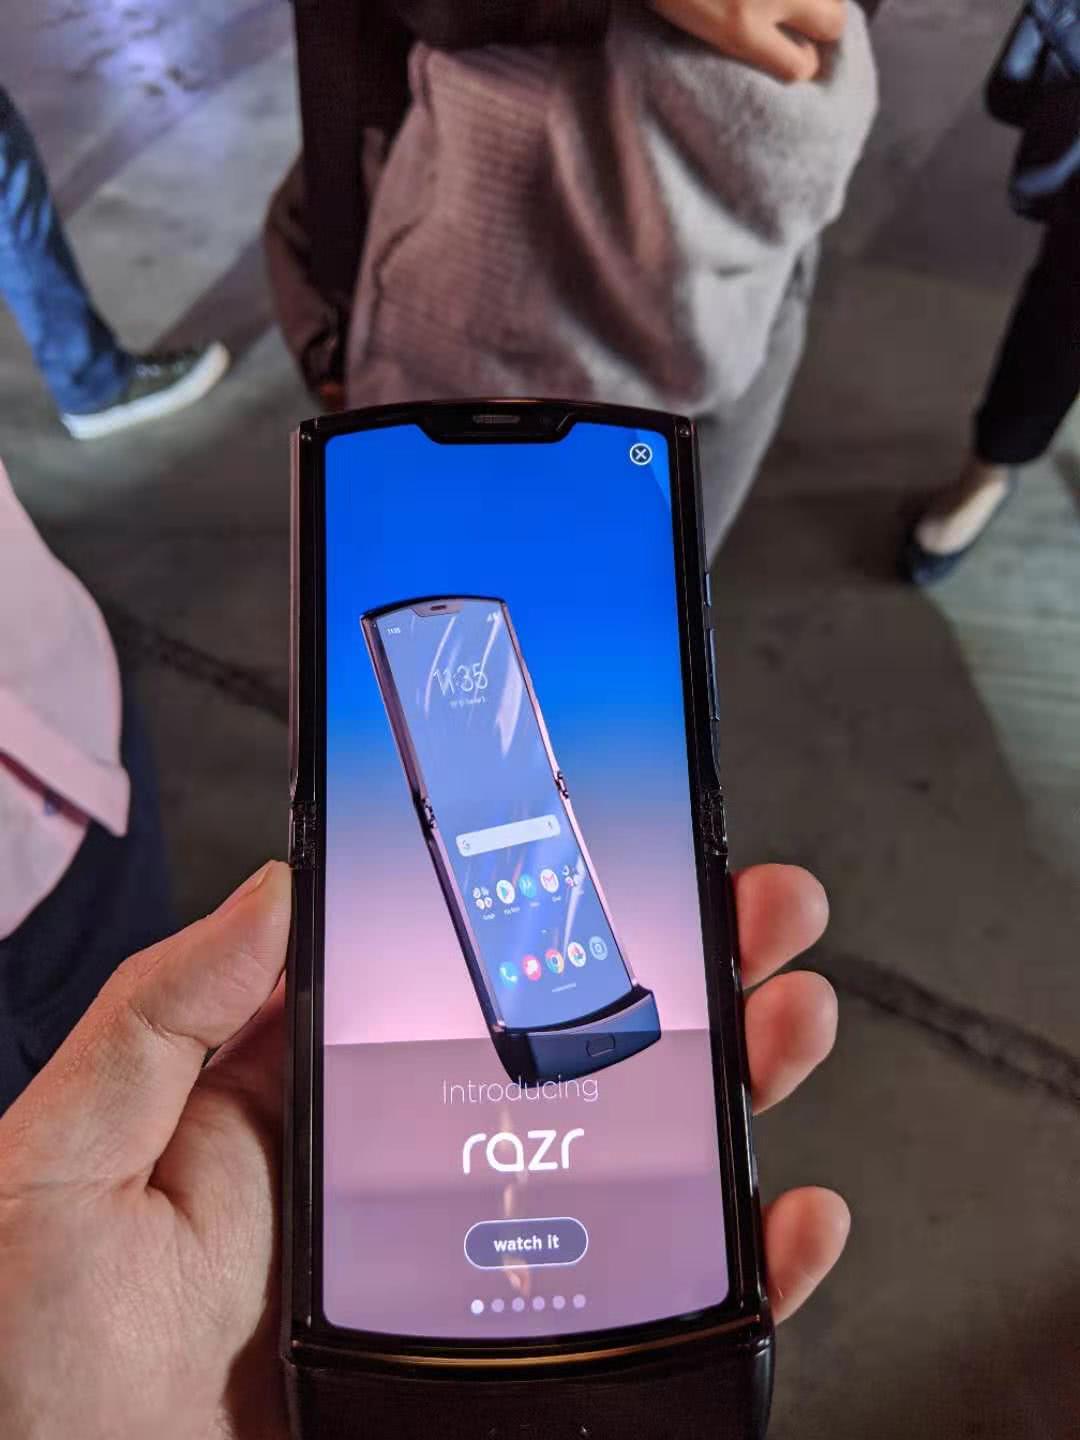 摩托罗拉手机公布竖向折叠手机RAZR 市场价或过万余元